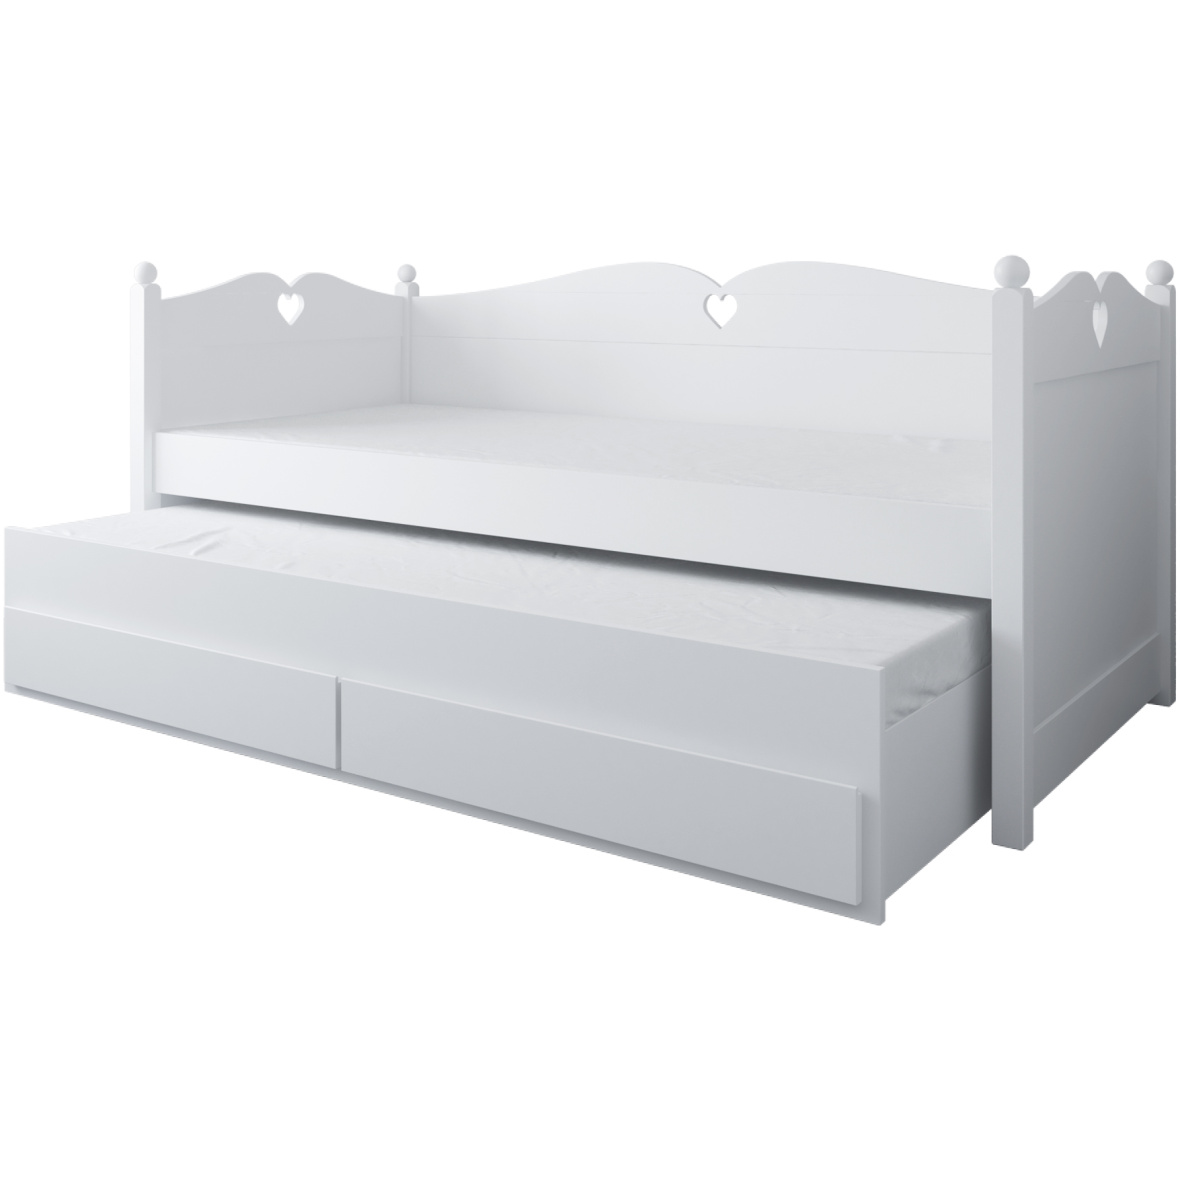 Двуспальная детская кровать с матрасами BELLA 200×90